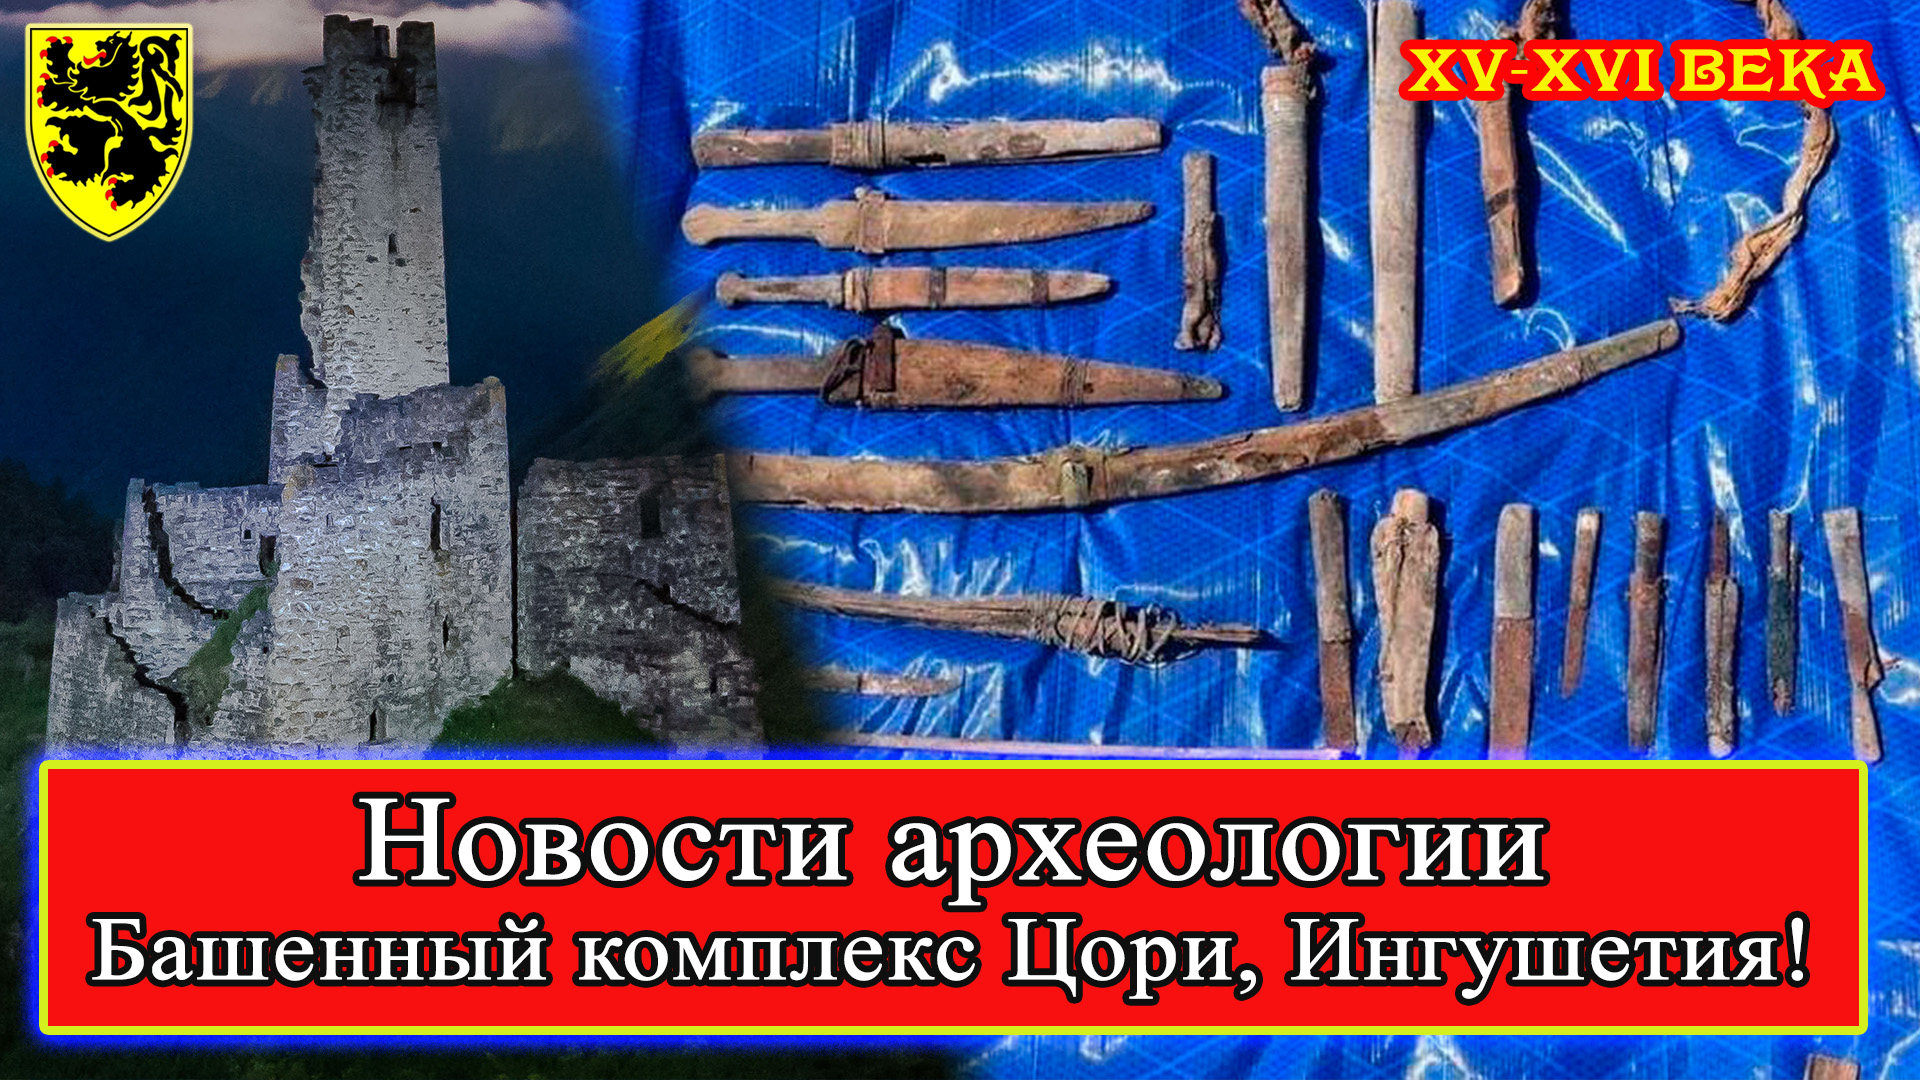 #НовостиАрхеологии Башенный комплекс Цори! #Ингушетия, август-октябрь 2022